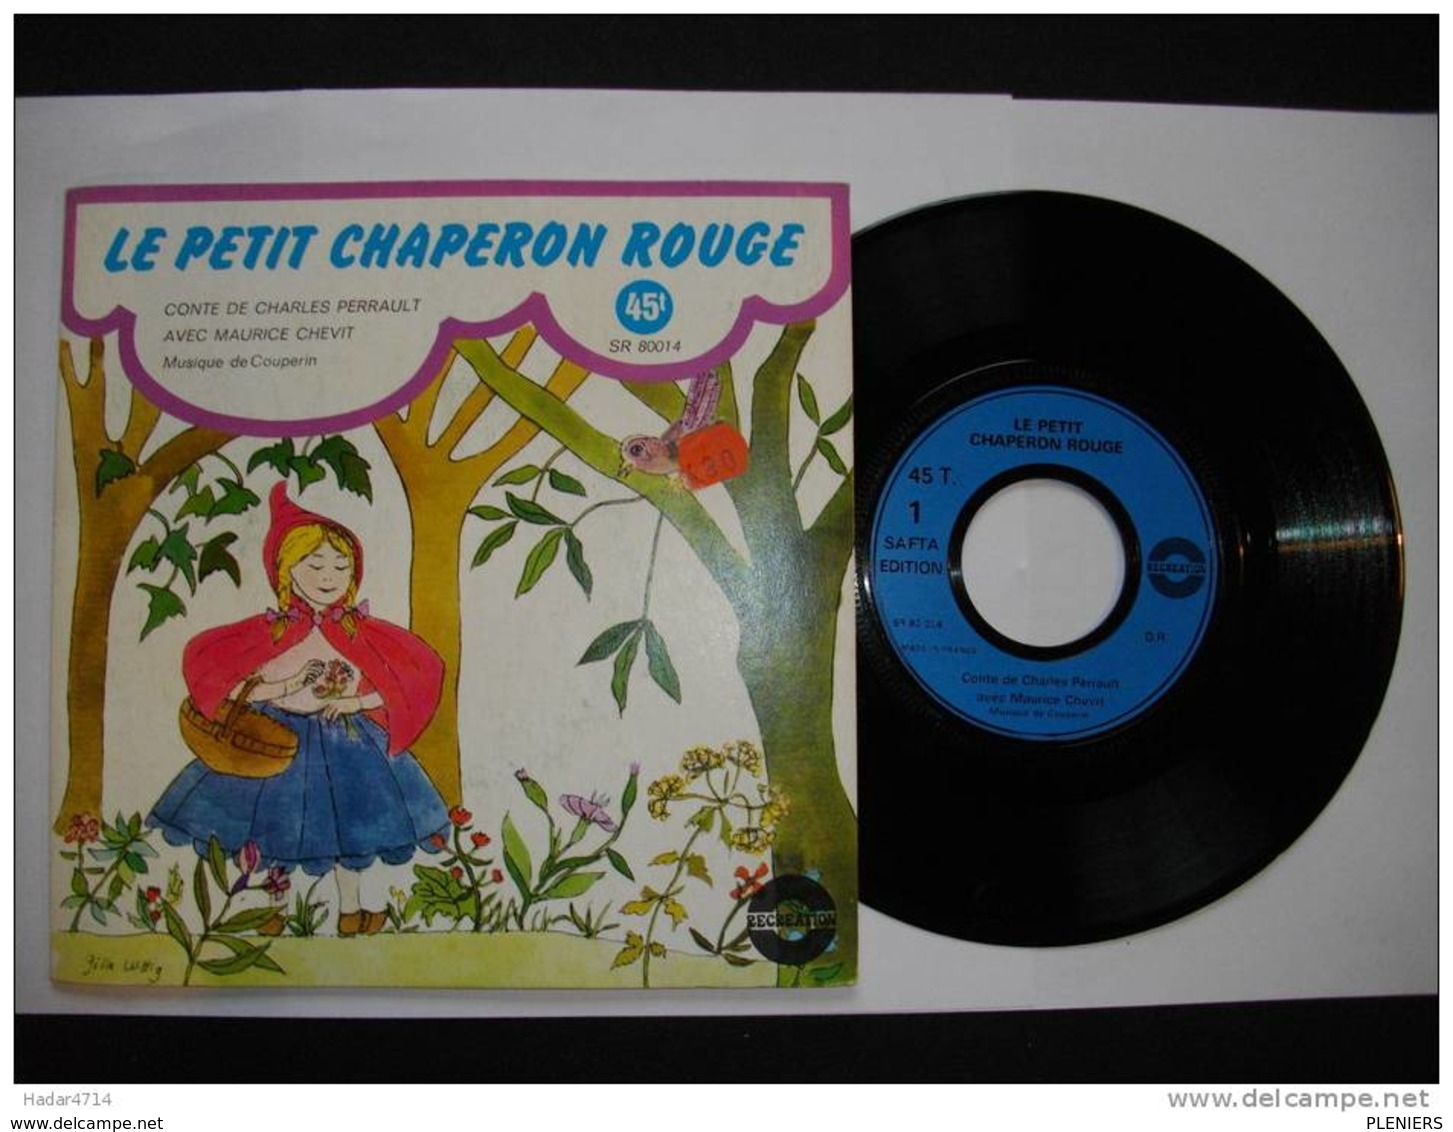 LE PETIT CHAPERON ROUGE  AVEC MAURICE CHEVIT MUSIQUE DE COUPERIN  45 TOURS ALBUM SR 80014 - Bambini